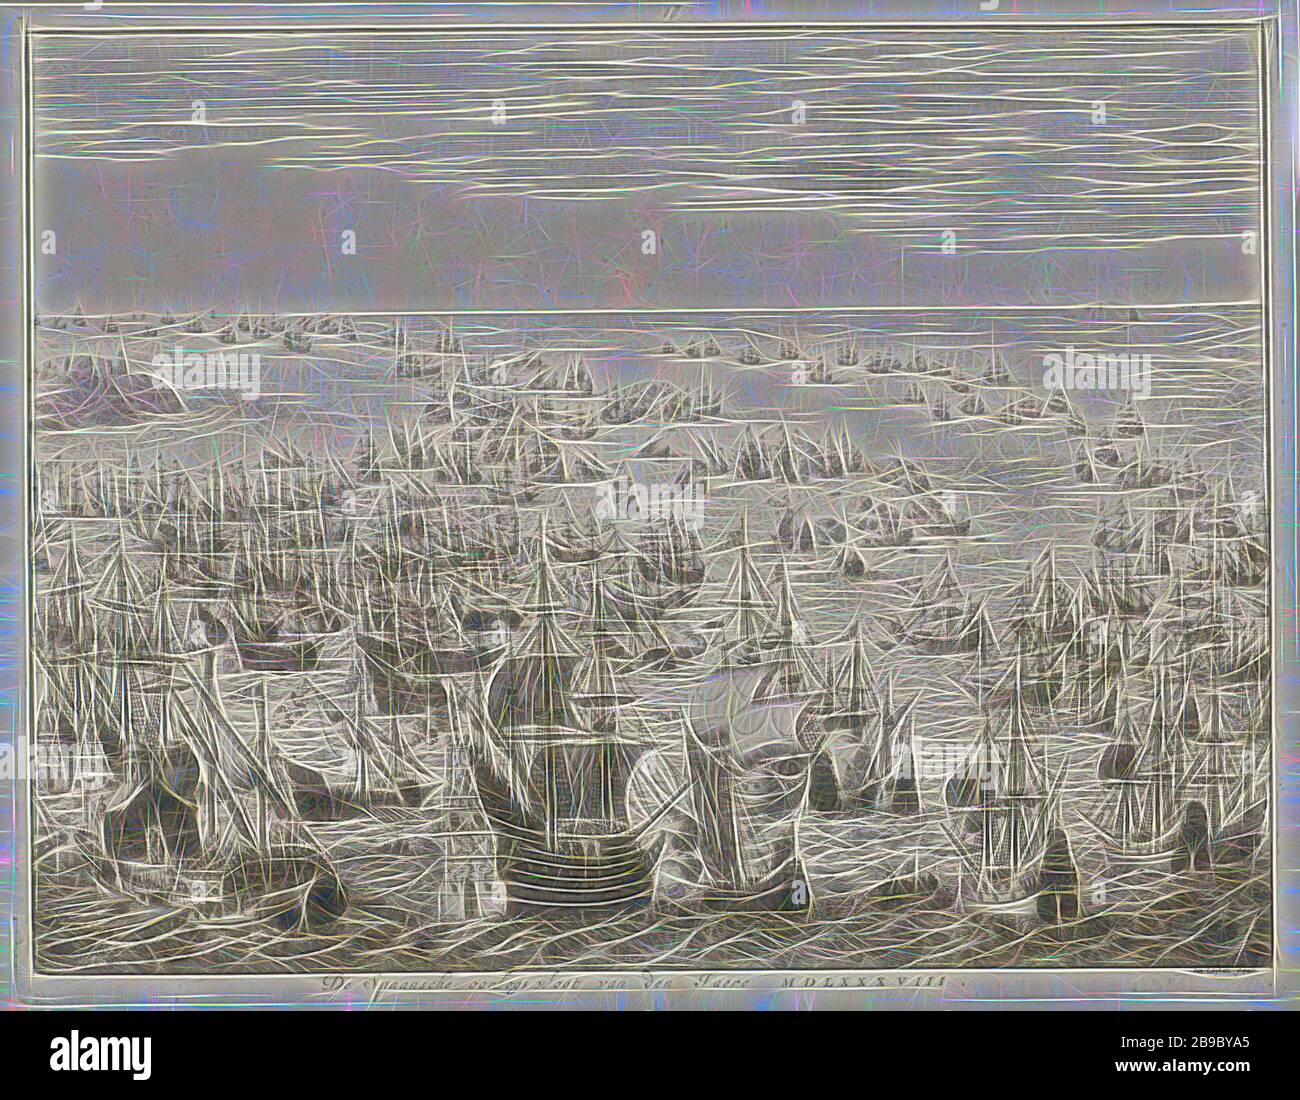 Chute de l'Armada espagnole, 1588 la flotte de guerre espagnole de la Jere MDLXXXVIII (titre sur objet), chute de l'Armada espagnole ou de la flotte invincible, entre le 31 juillet et le 12 août 1588. Bataille entre les flottes espagnole et combinée anglaise et néerlandaise dans la Manche. Au premier plan, une grande frégate espagnole est prise par un petit navire néerlandais avec la bannière de la ville de Leiden, à gauche une galley, bataille (force navale), Manche, Jan Luyken (mentionné sur l'objet), Amsterdam, 1679 - 1684, papier, gravure, h 272 mm × l 351 mm, repensé par Gibon, design de brillant gai chaud Banque D'Images